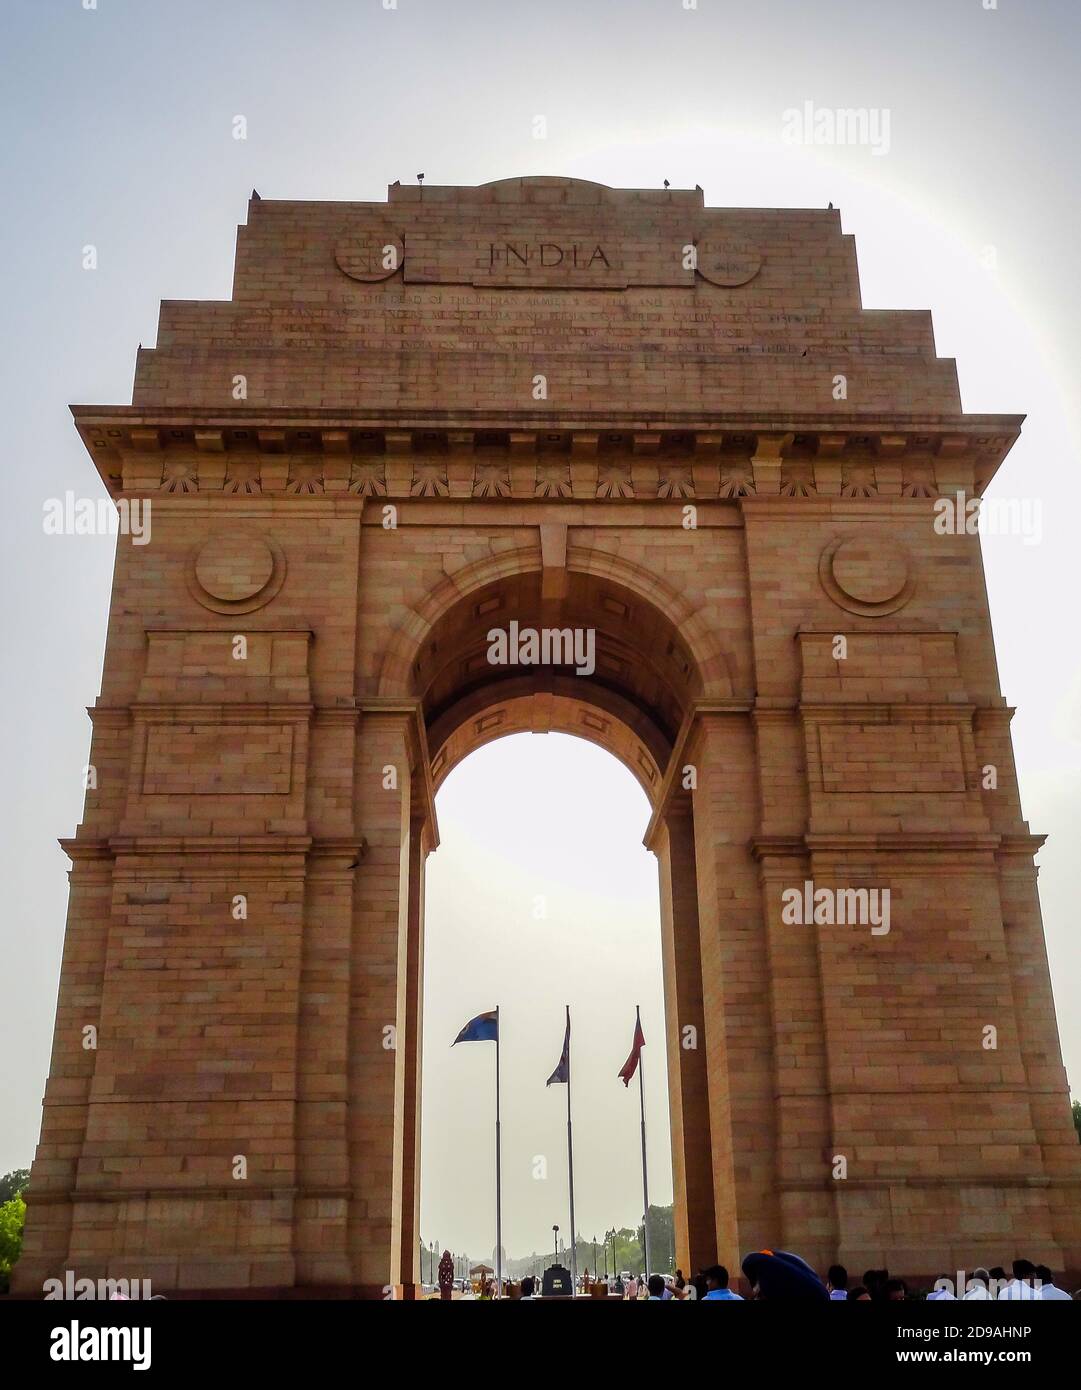 La porte de l'Inde est située dans le centre de New Delhi, la capitale de l' Inde Photo Stock - Alamy